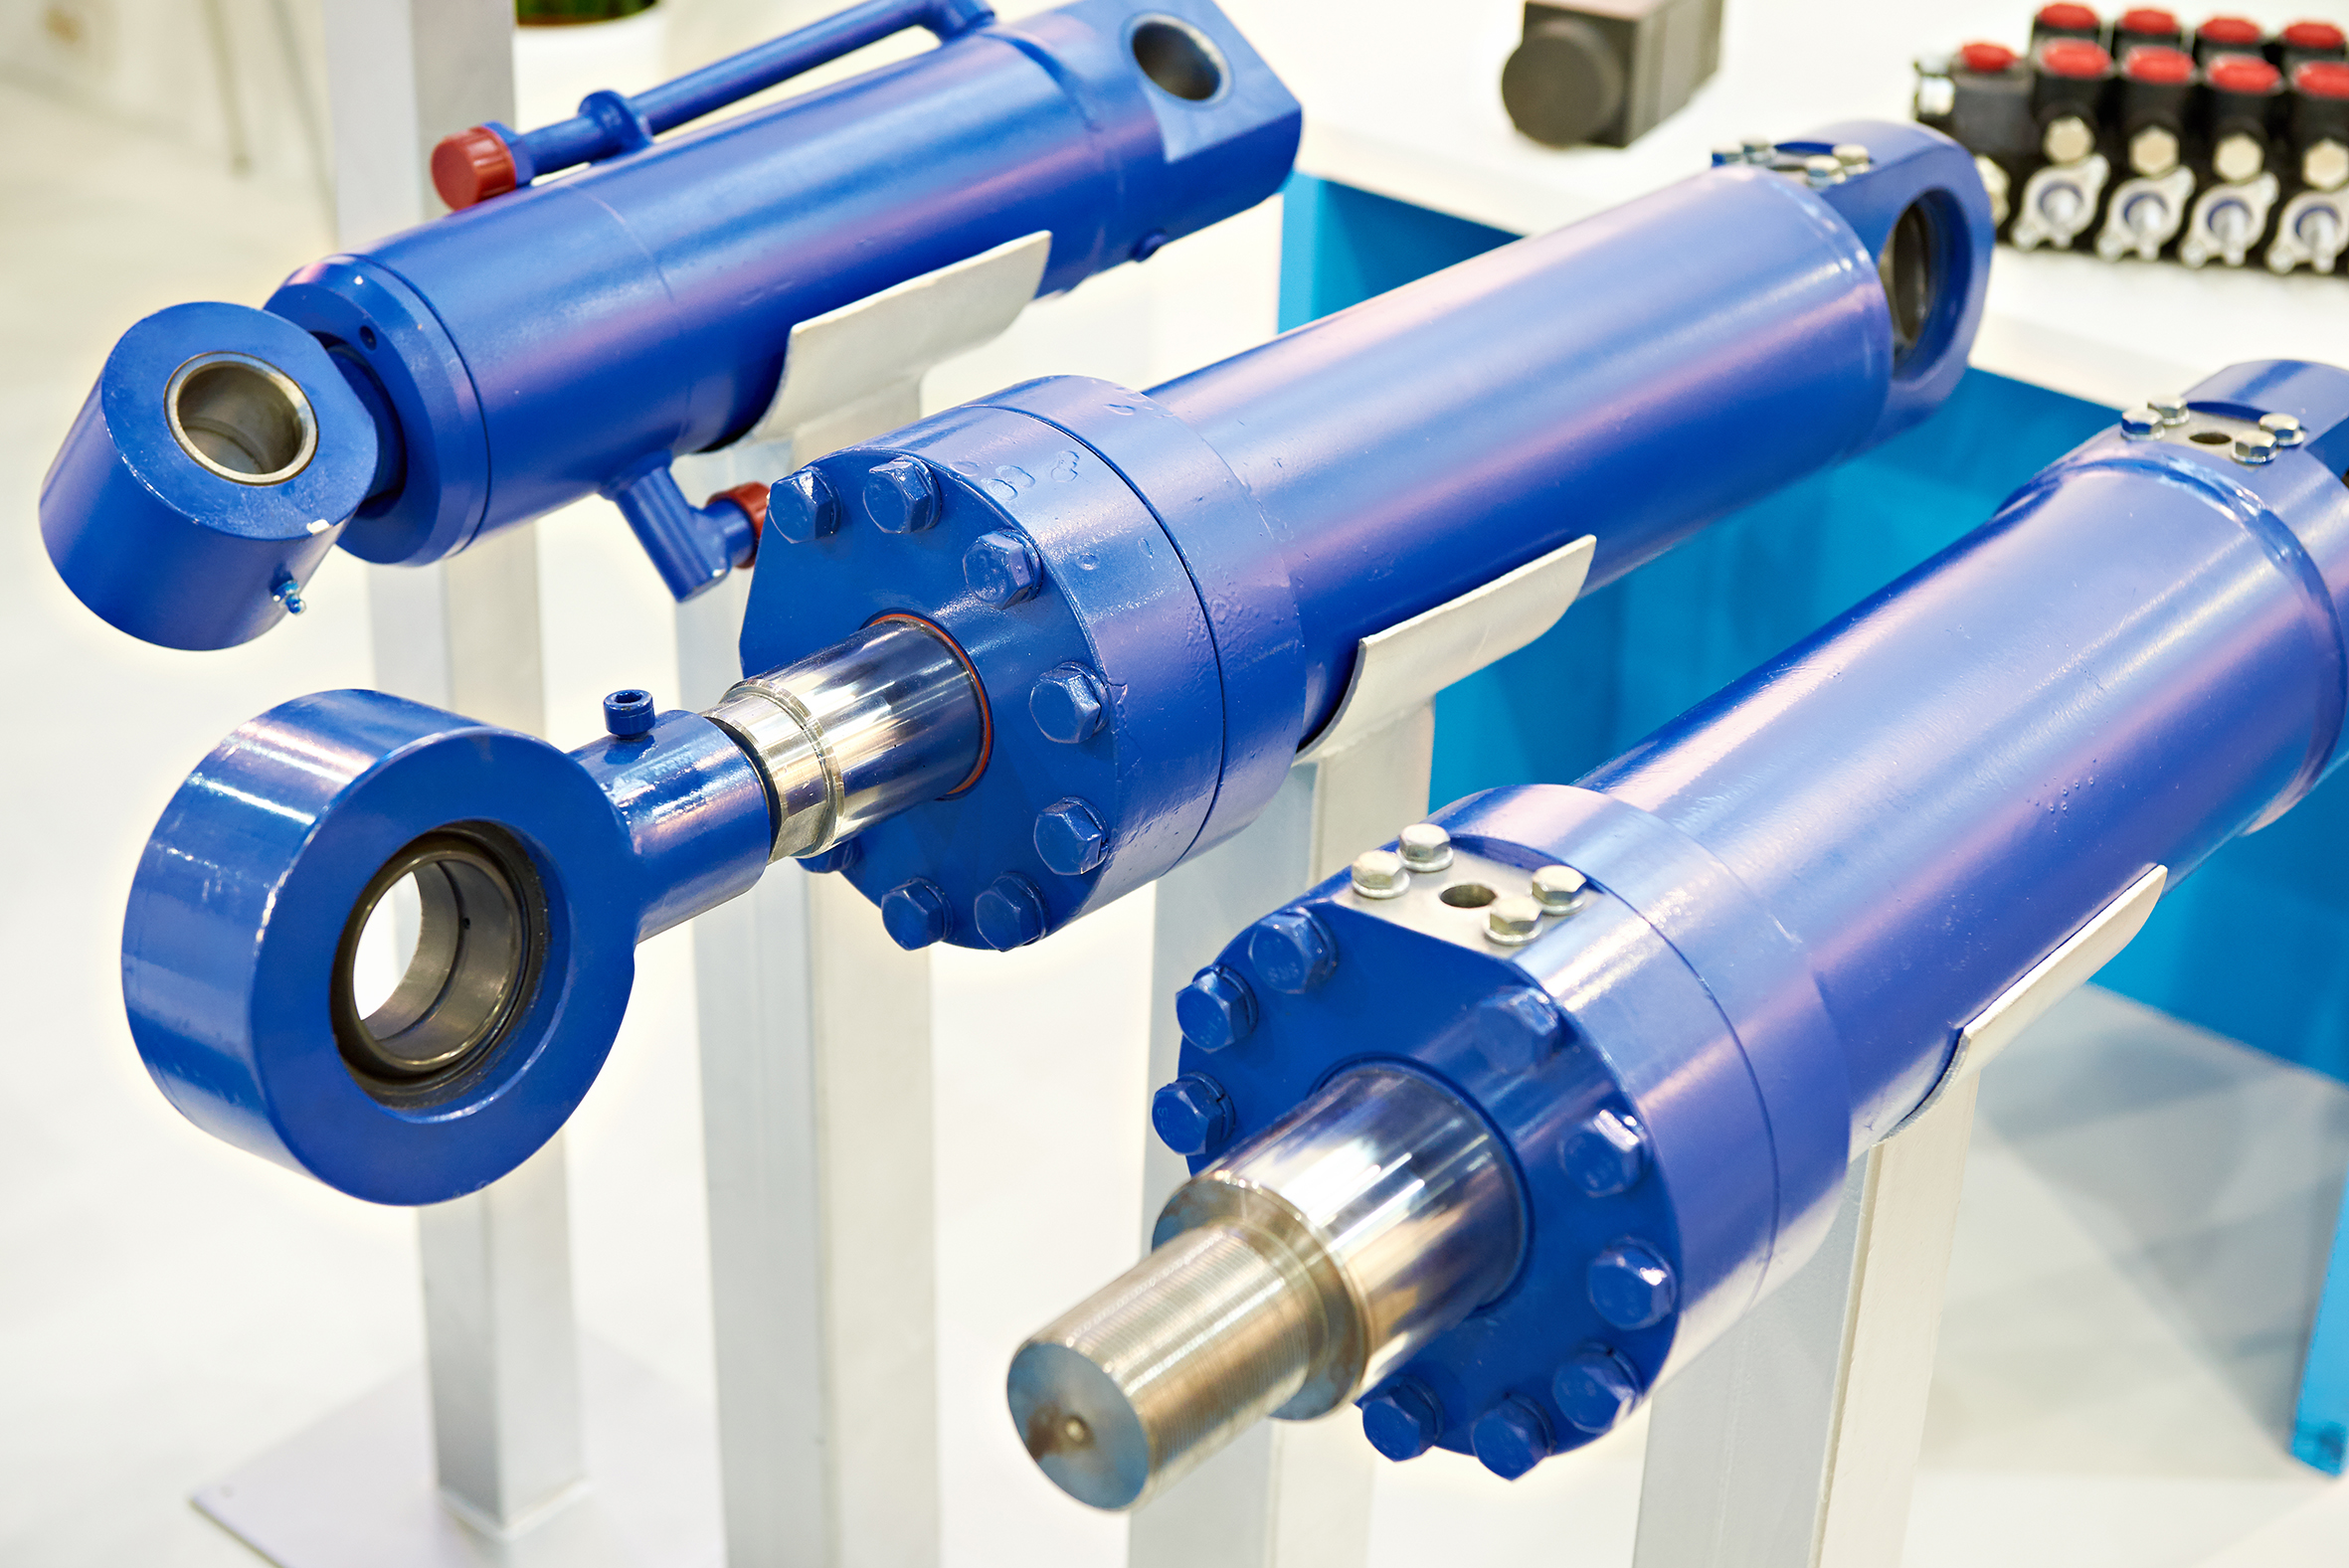 Three blue hydraulic cylinders on display